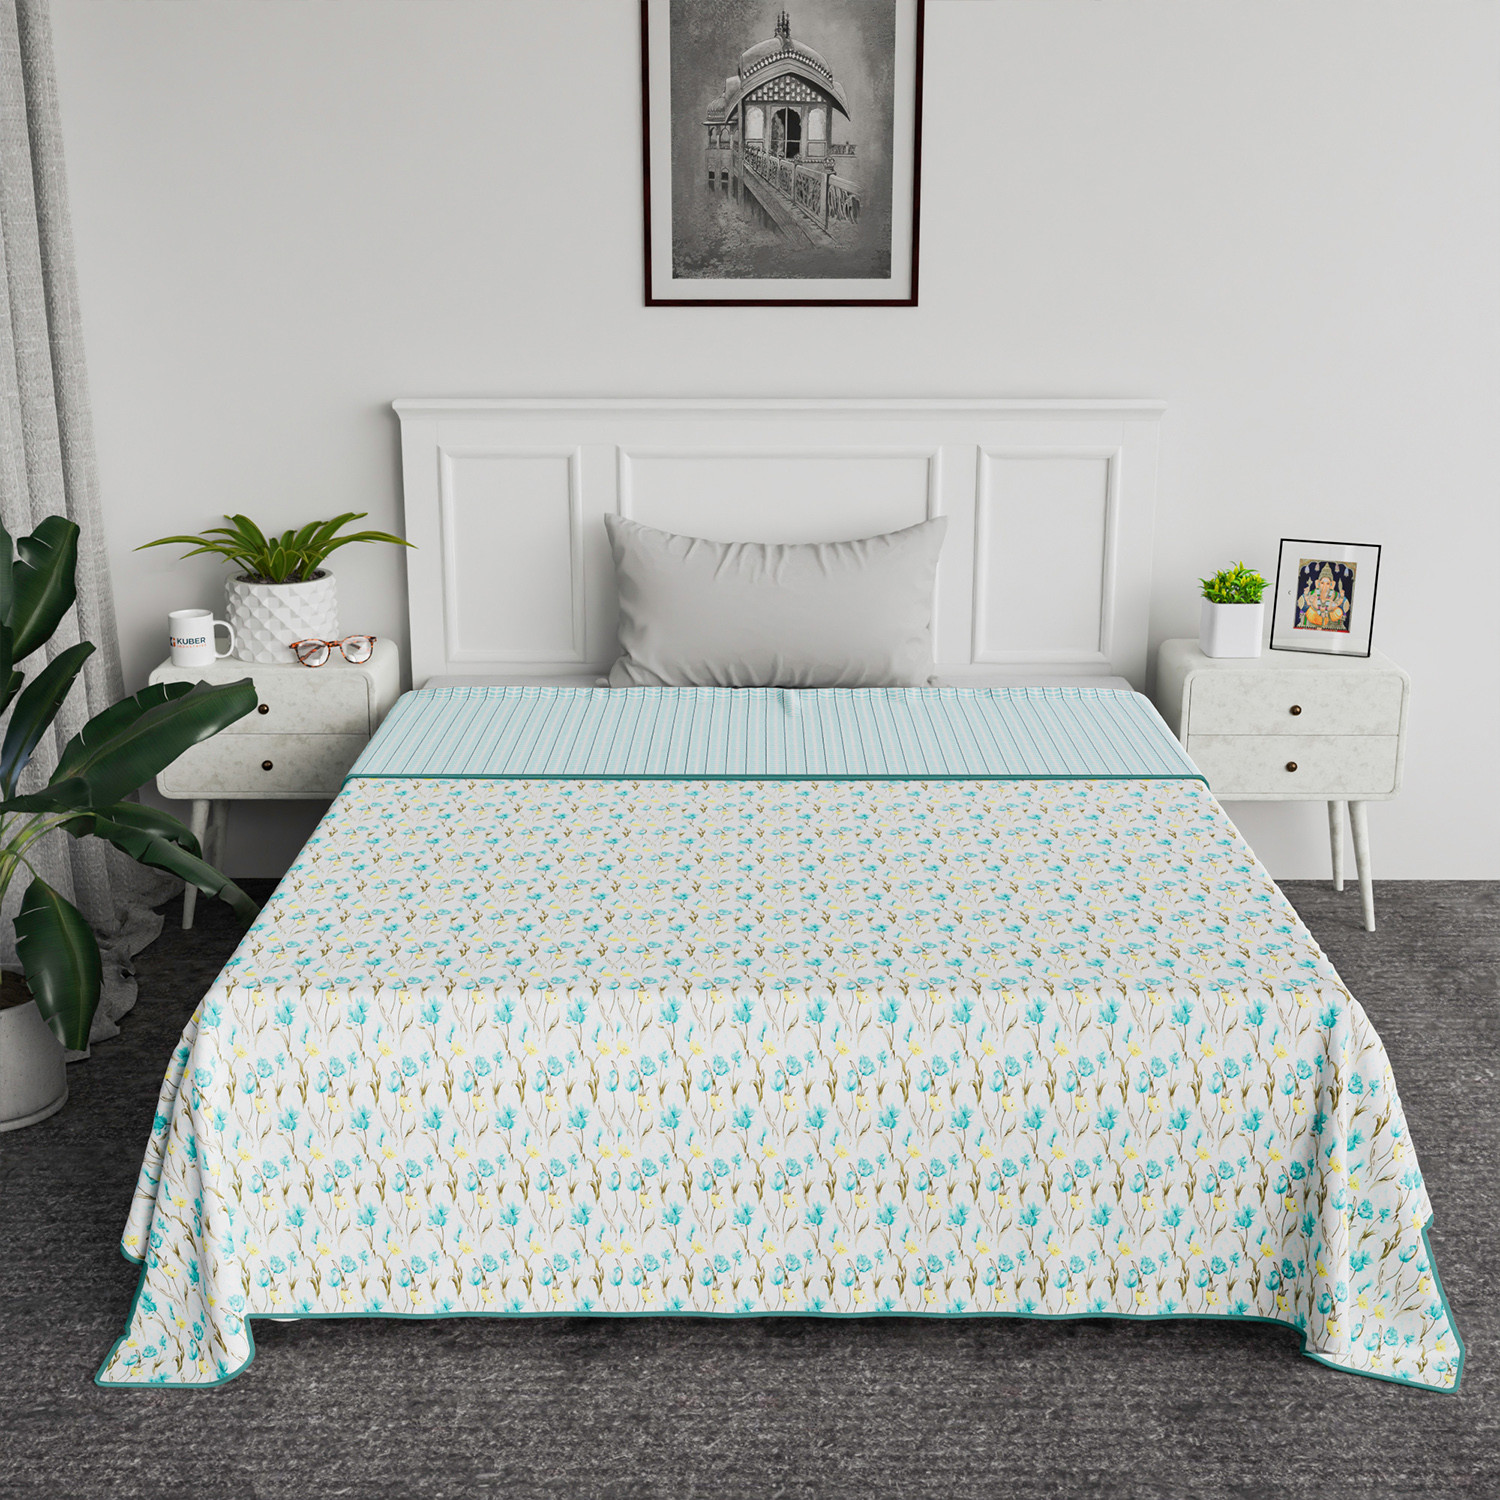 Kuber Industries Blanket | Cotton Single Bed Dohar | Blanket For Home | Reversible AC Blanket For Travelling | Blanket For Summer | Blanket For Winters | Blue Flower | White